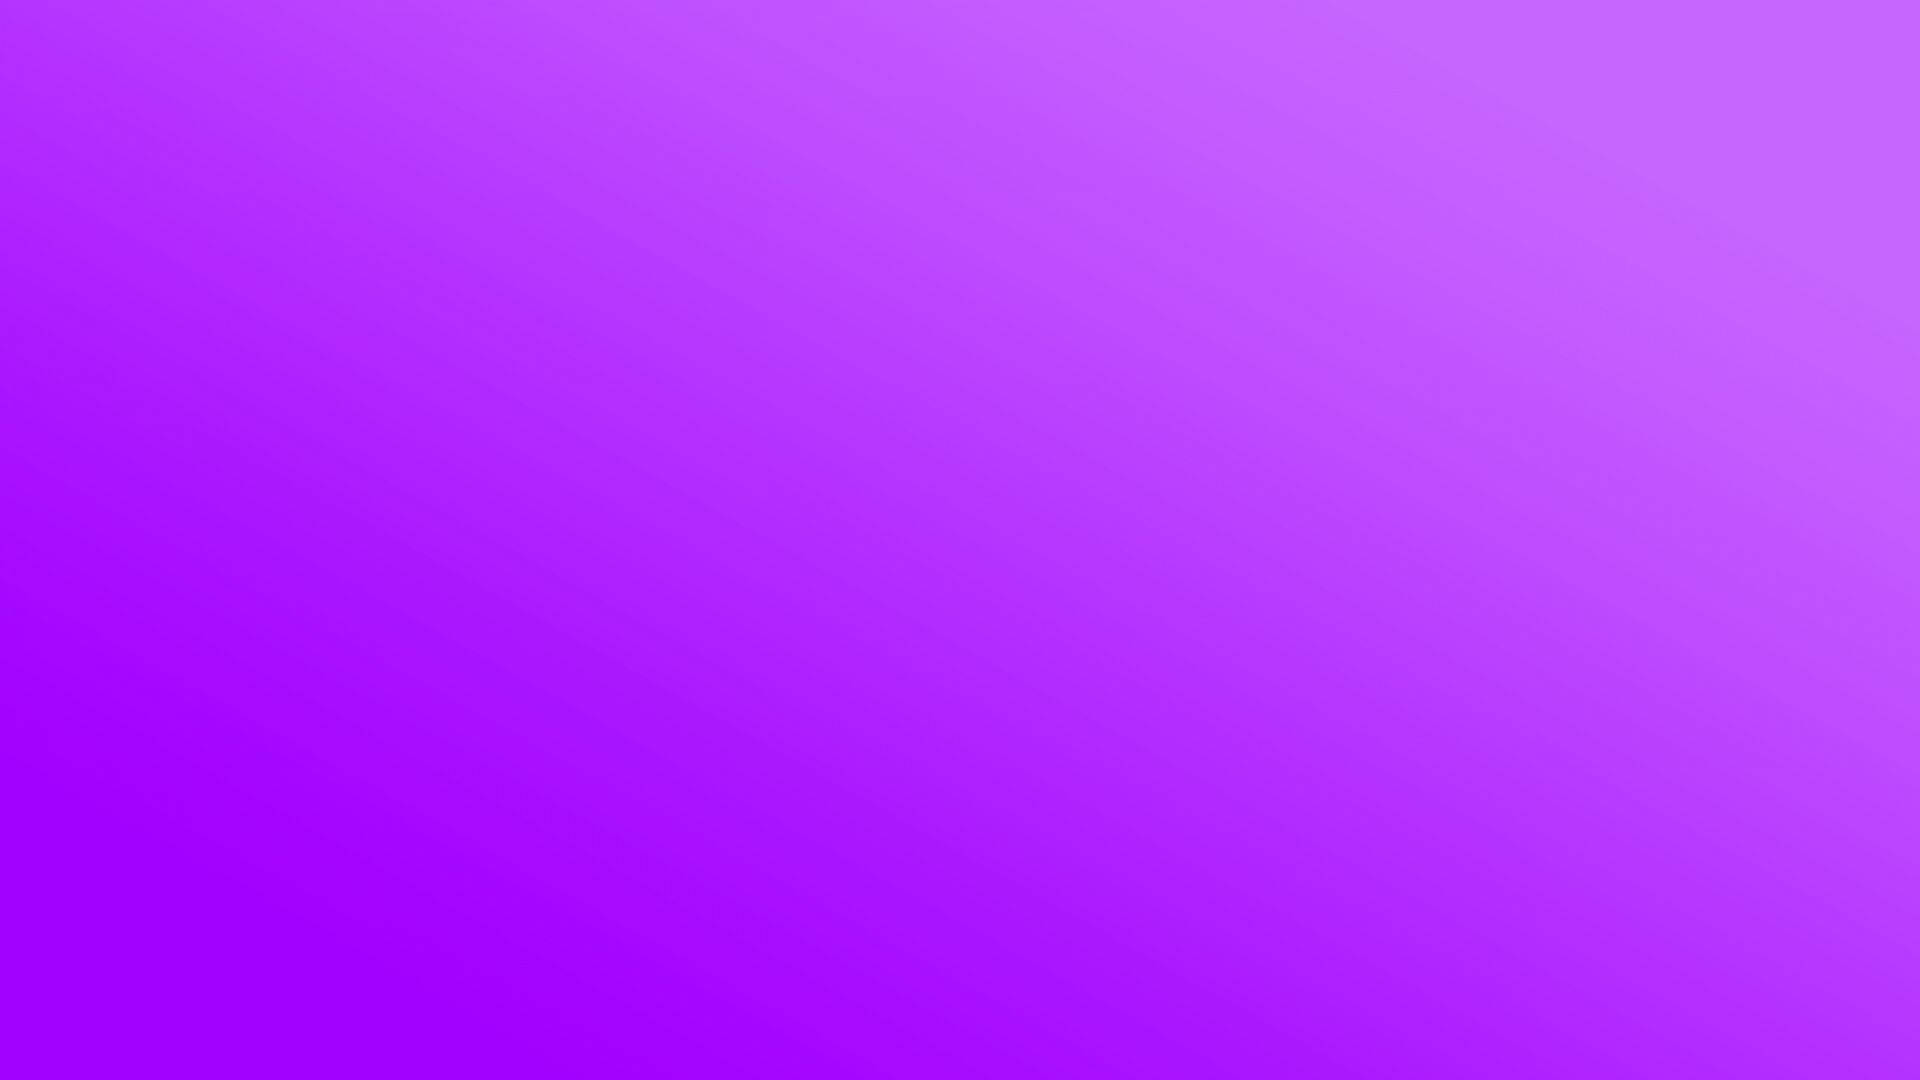 1920x1080 Solid Purple hình nền